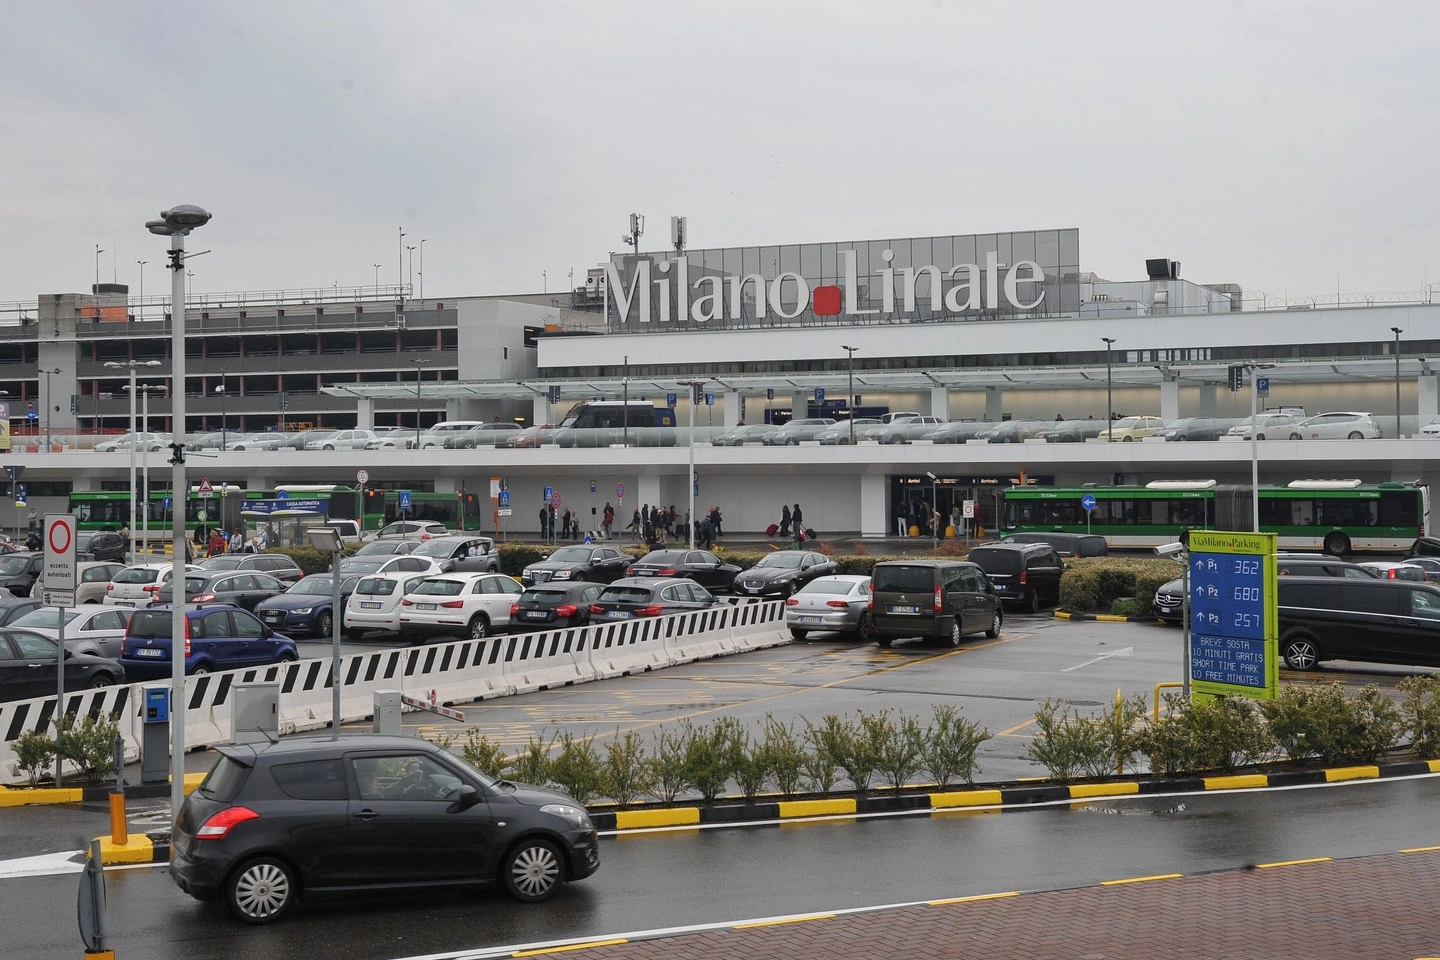 L'aeroporto di Linate